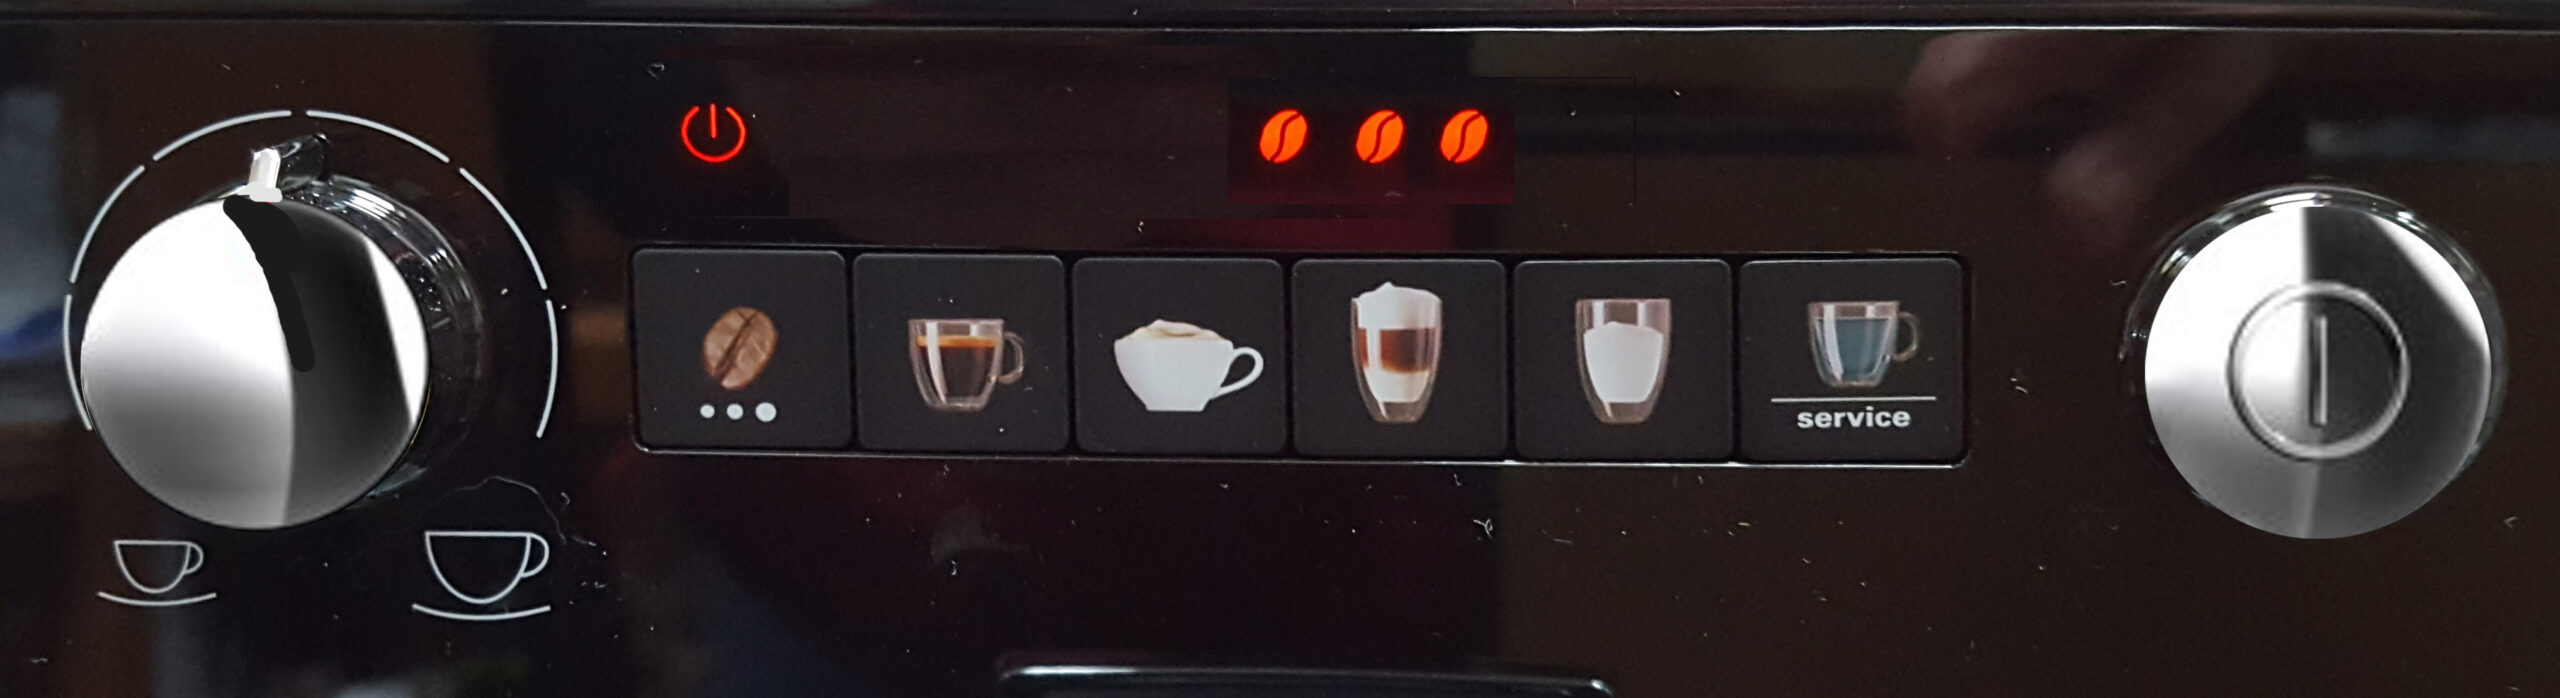 Passions By Cath Installation de la machine à café avec broyeur intégré Latticia OT de Melitta COMMANDES 3Grains scaled